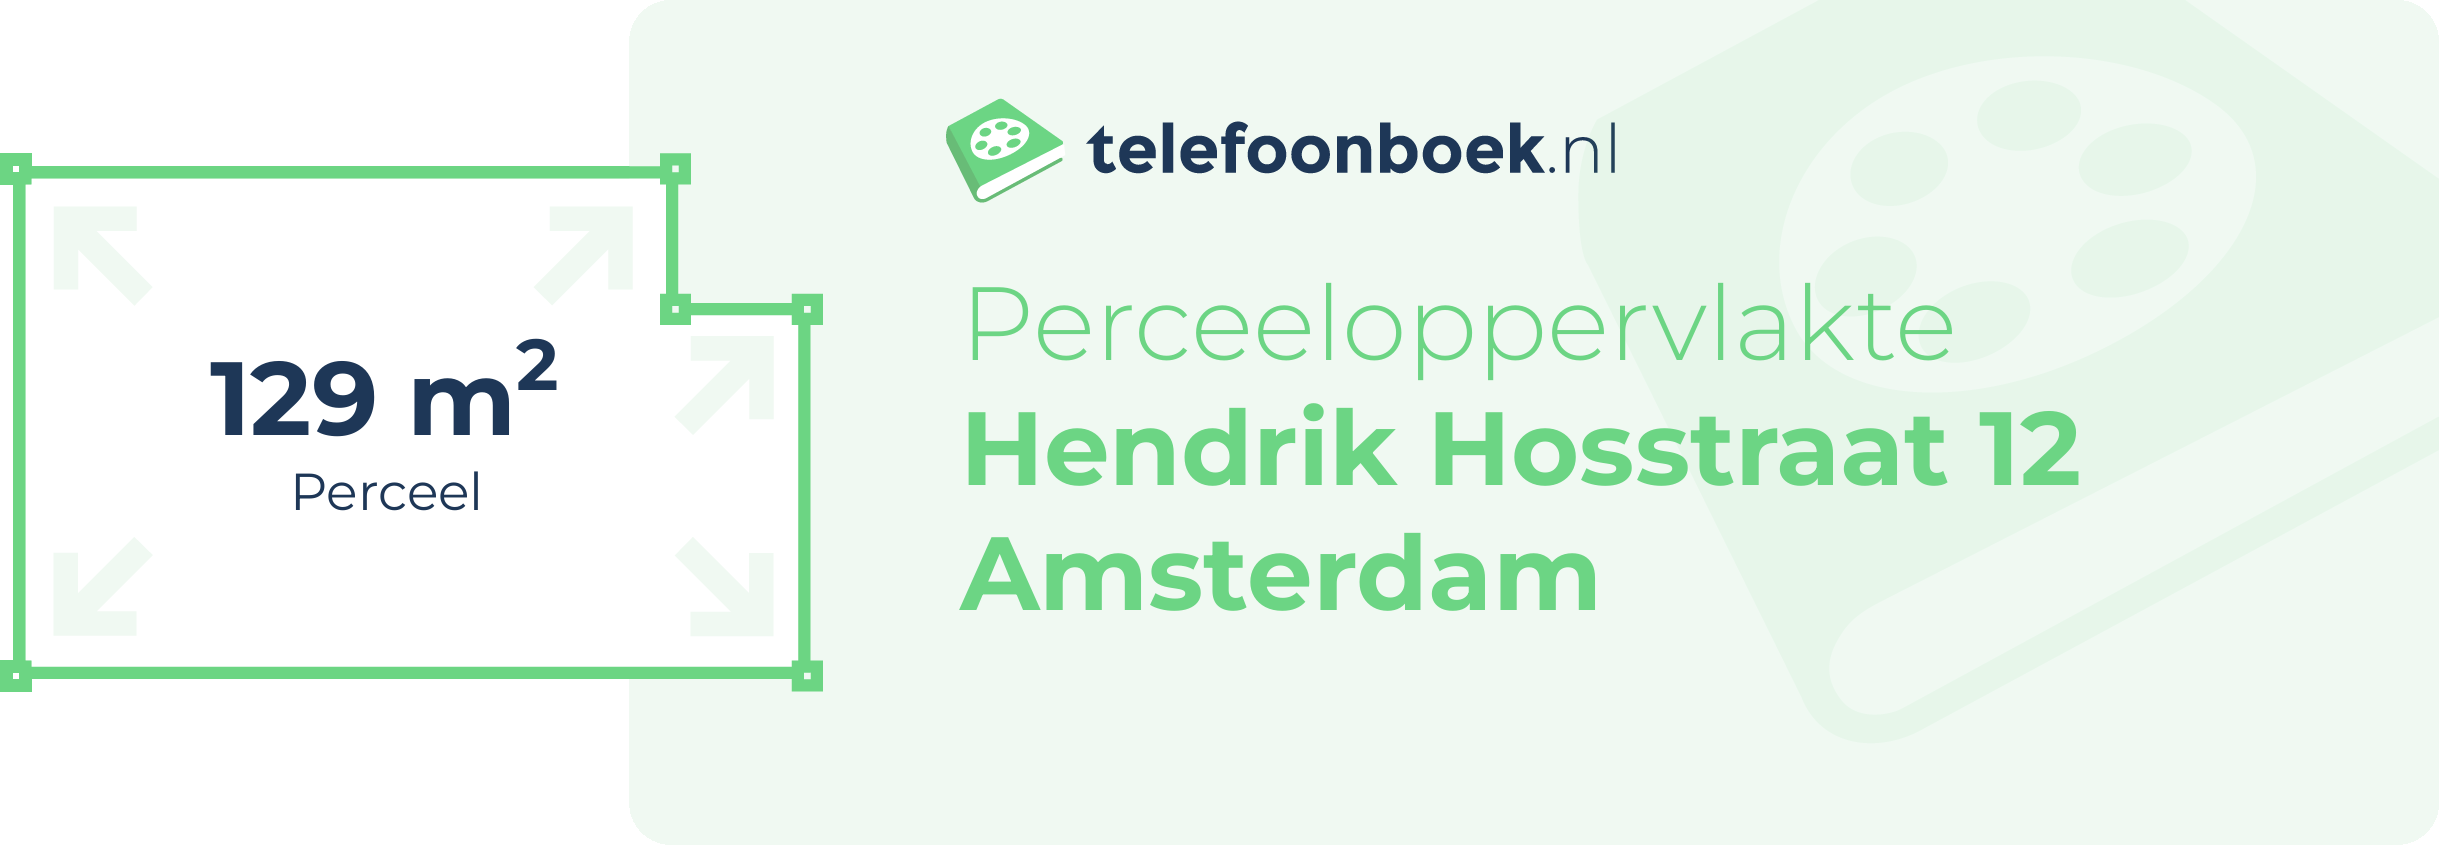 Perceeloppervlakte Hendrik Hosstraat 12 Amsterdam